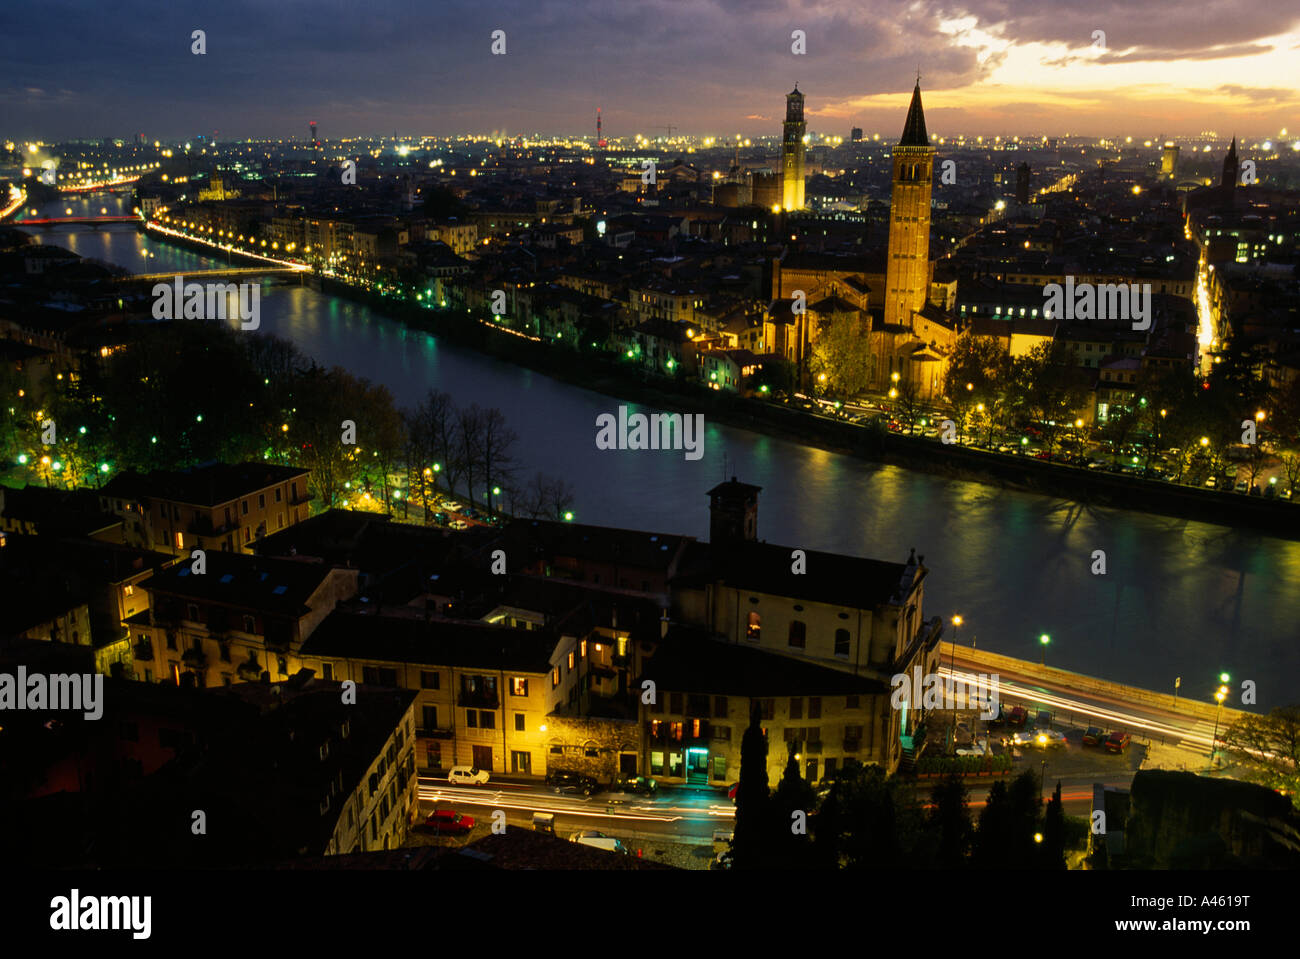 ITALY Veneto Verona View over the Adige river and city skyline illuminated at night Stock Photo